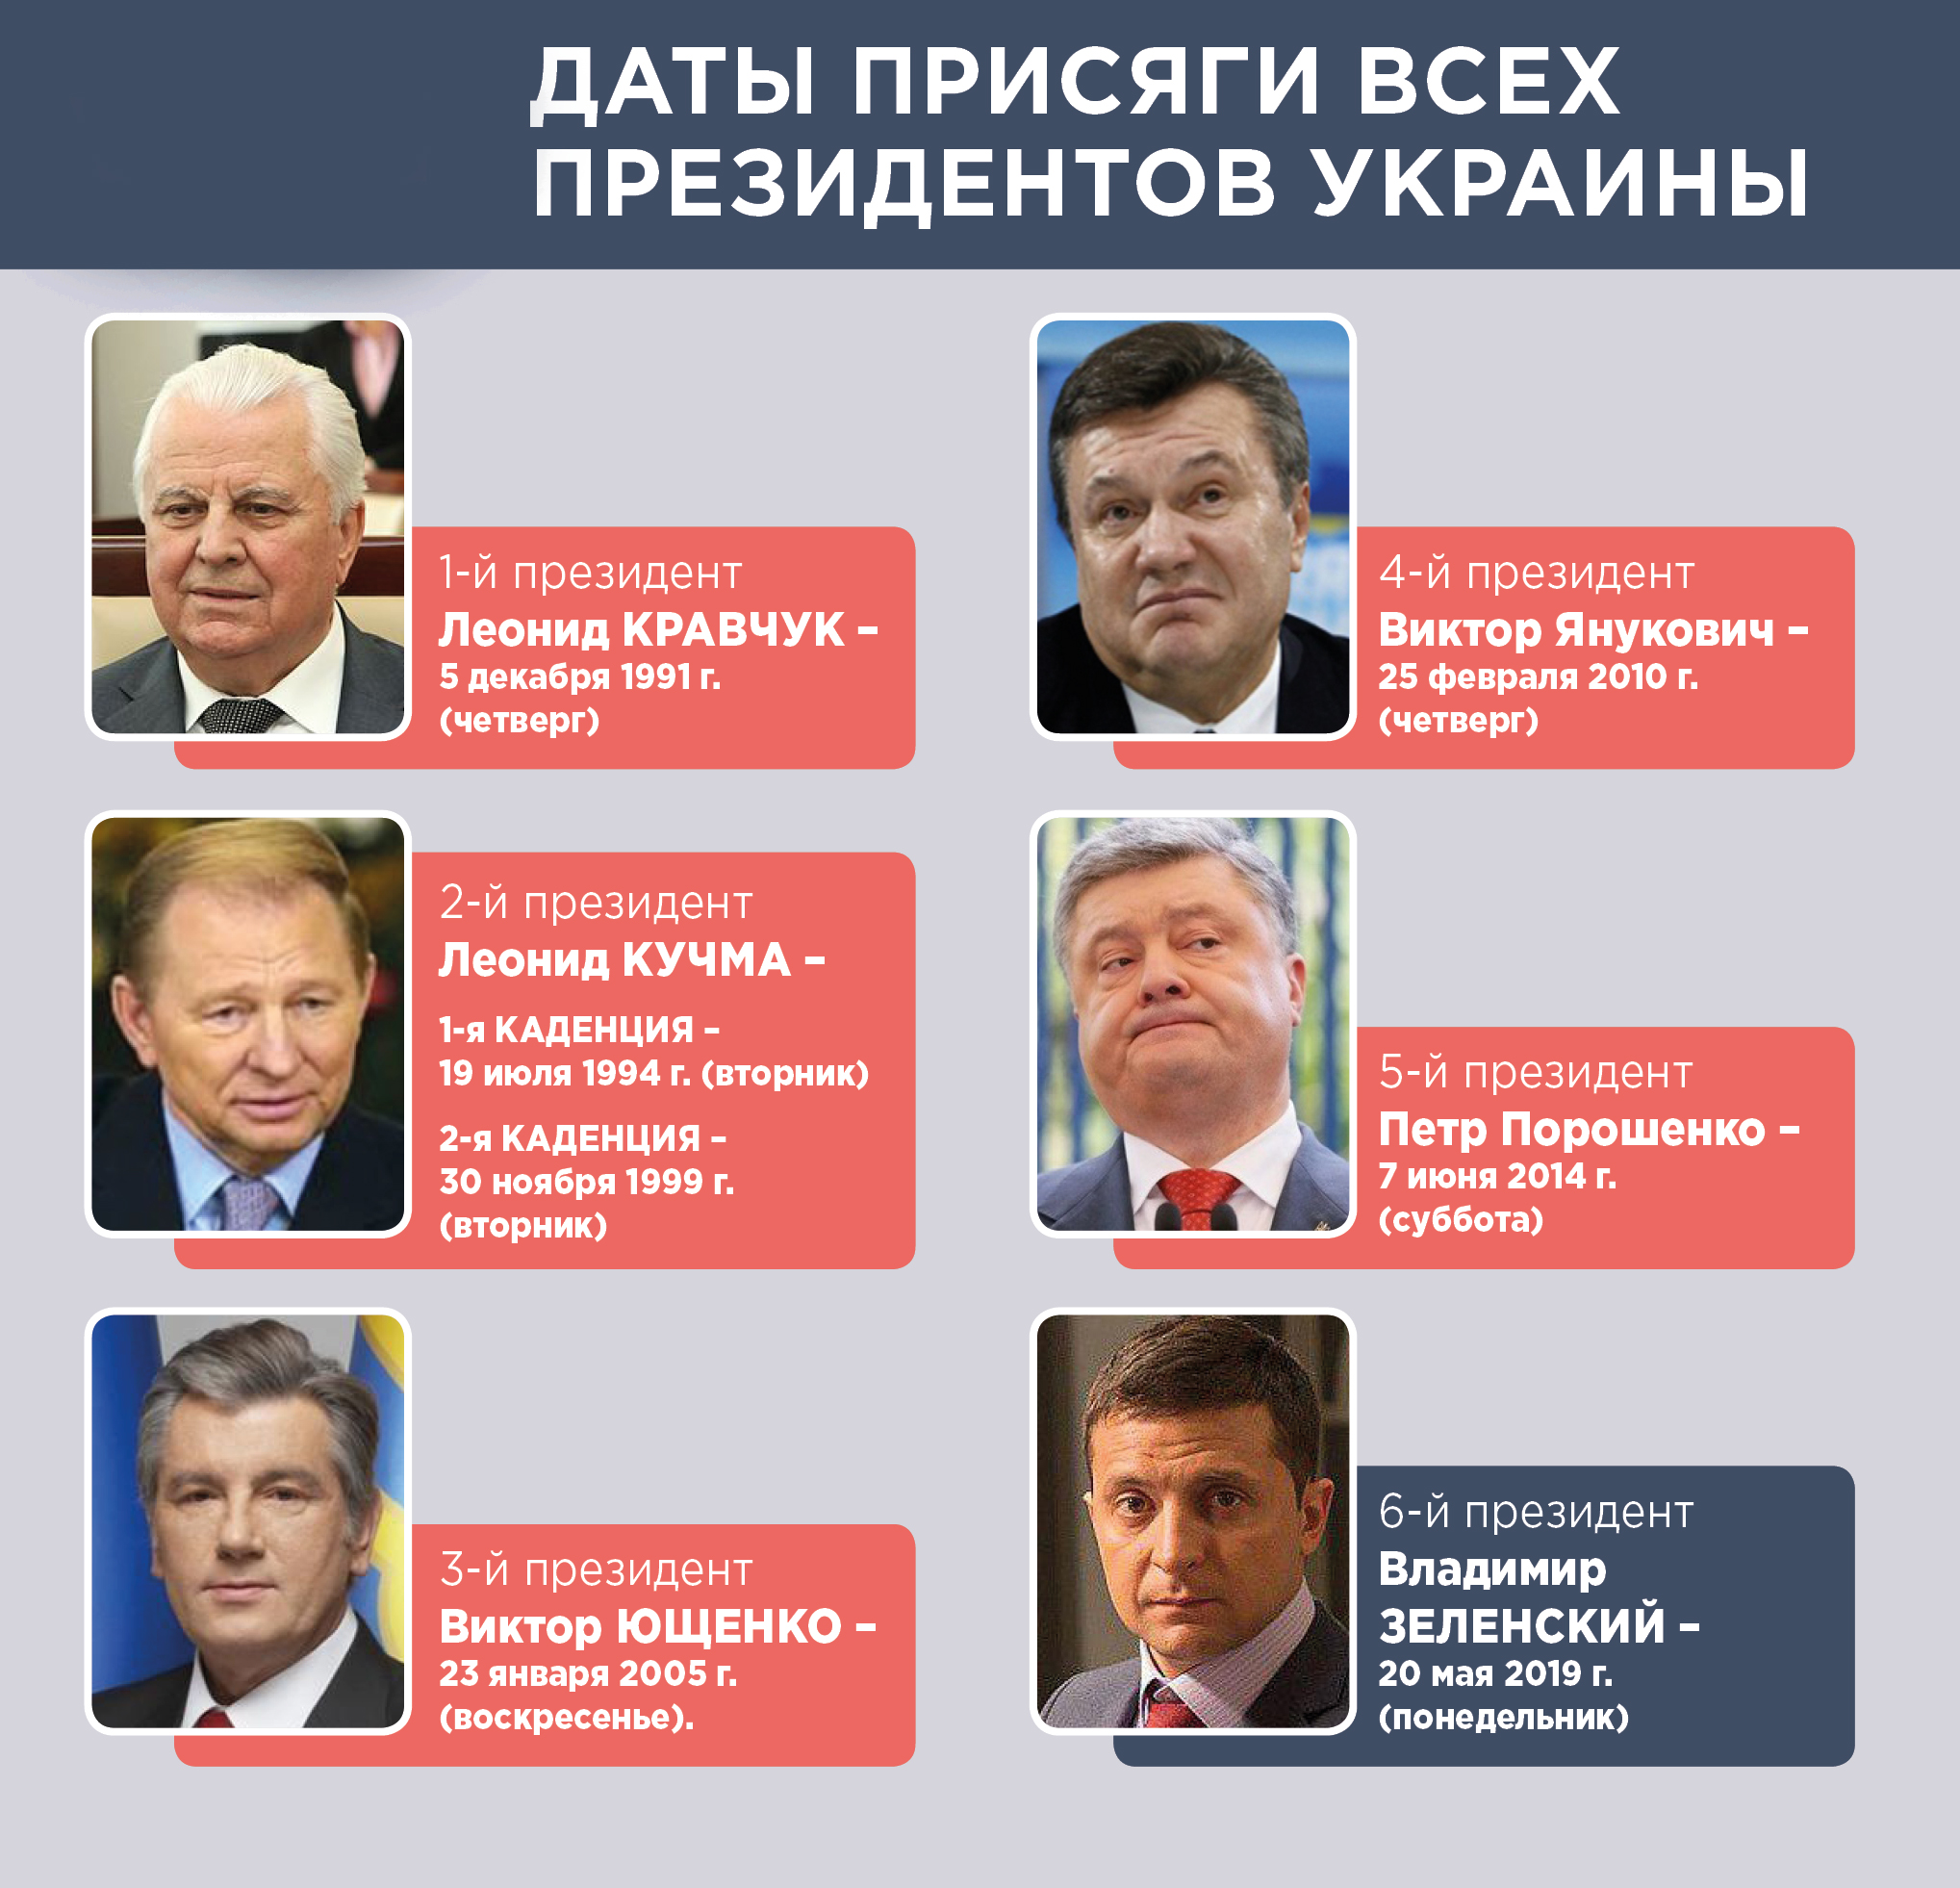 Президенты Украины по порядку с 1991